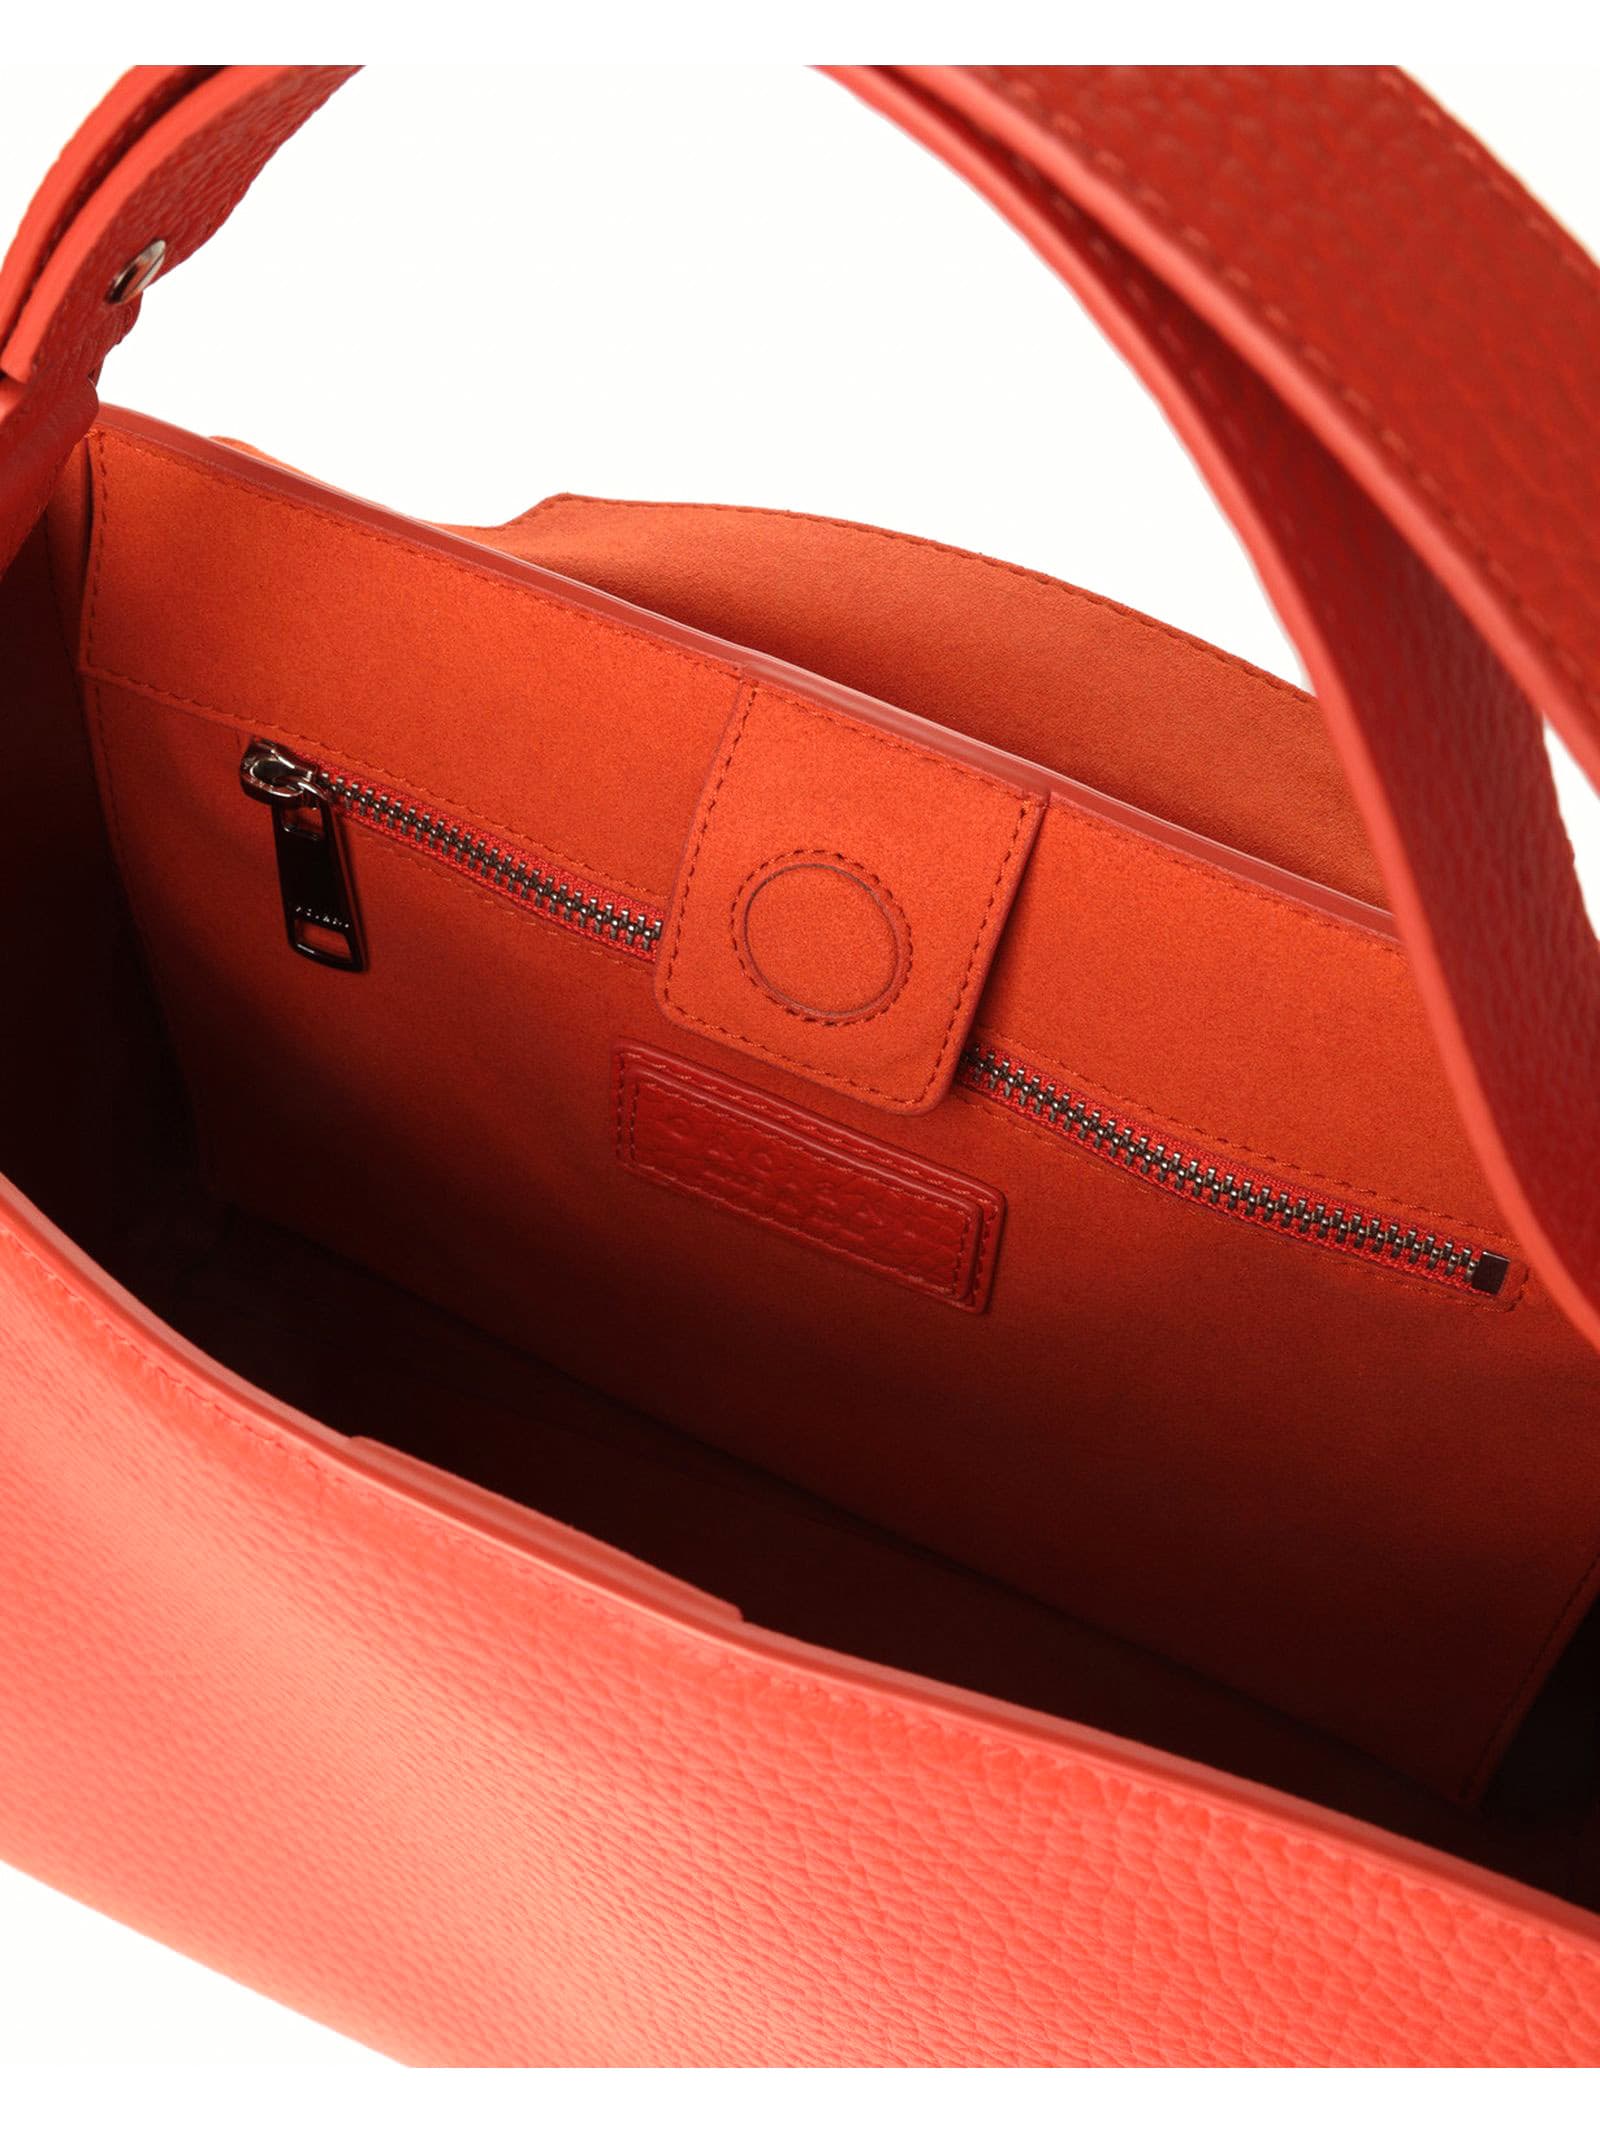 Shop Orciani Sveva Soft Medium Leather Shoulder Bag In Orange